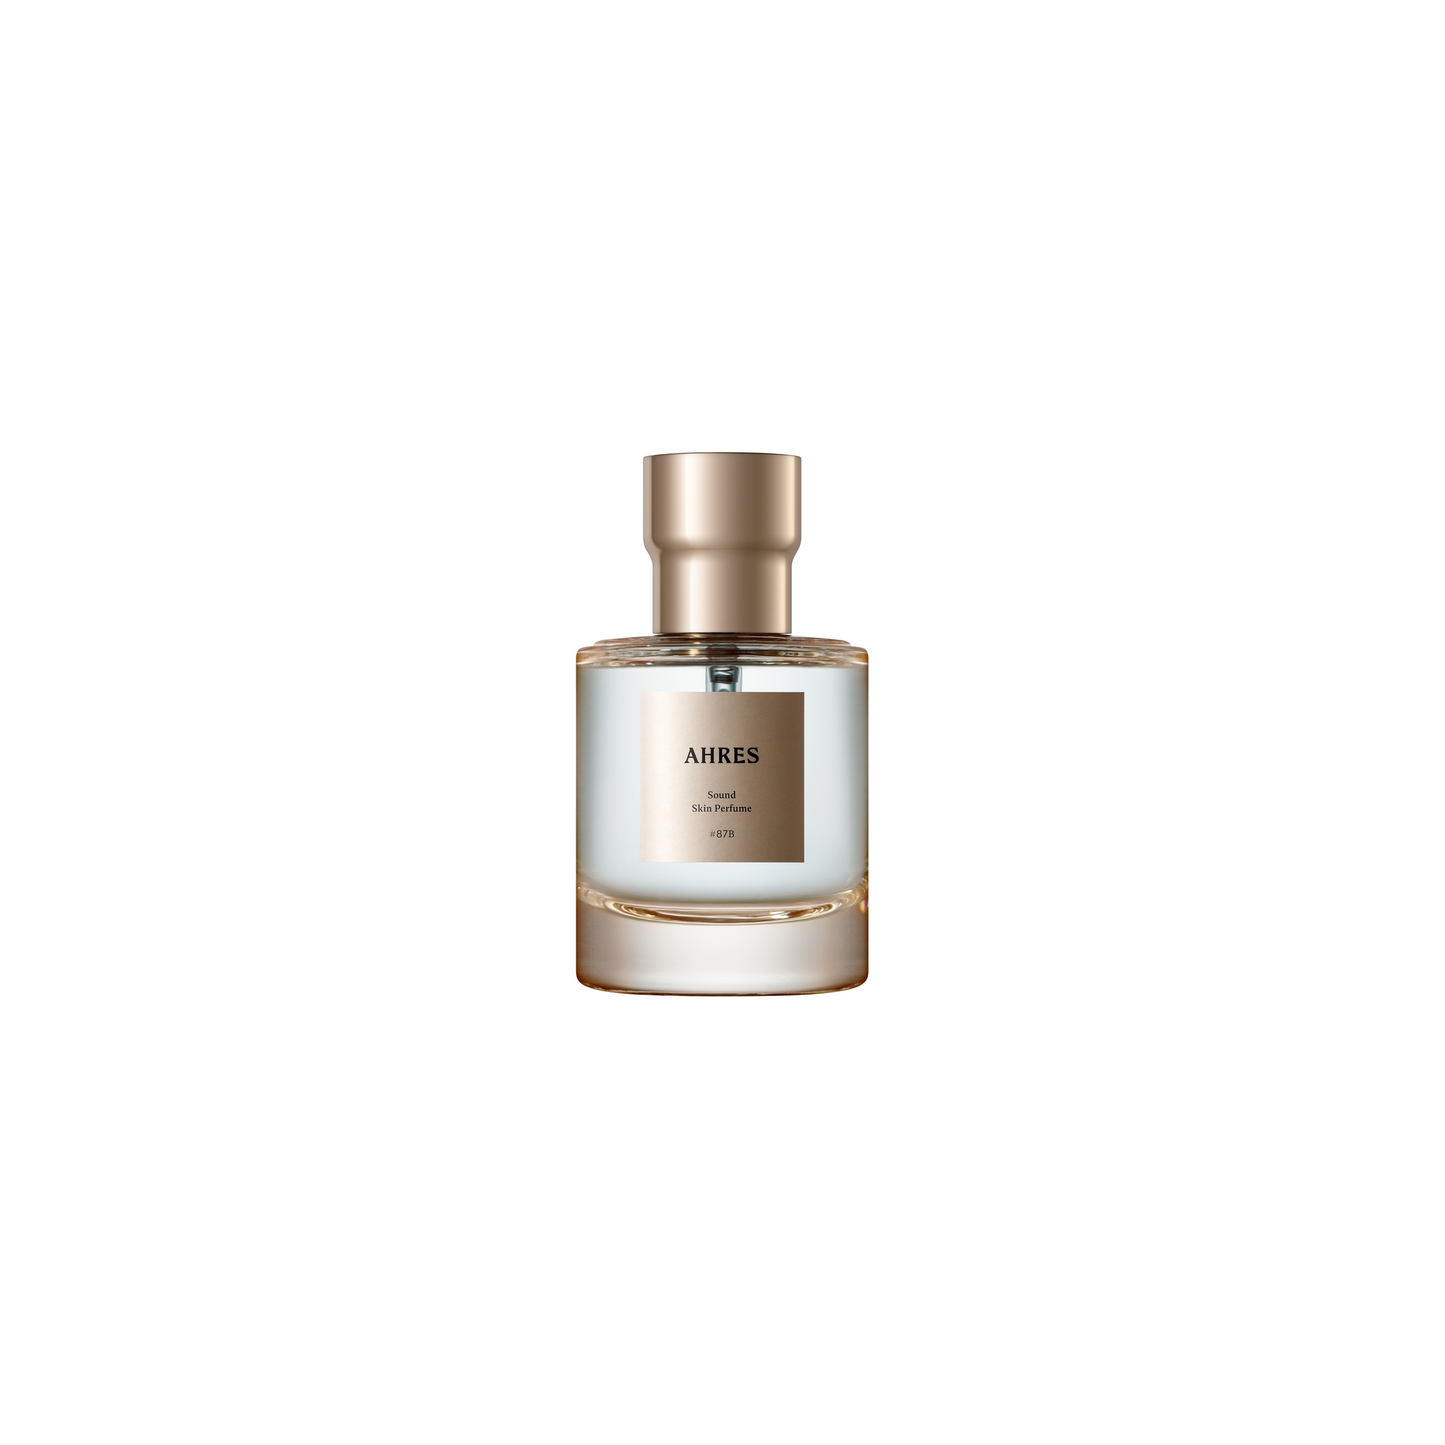 Sound Skin Perfume #87B JIN-LAI